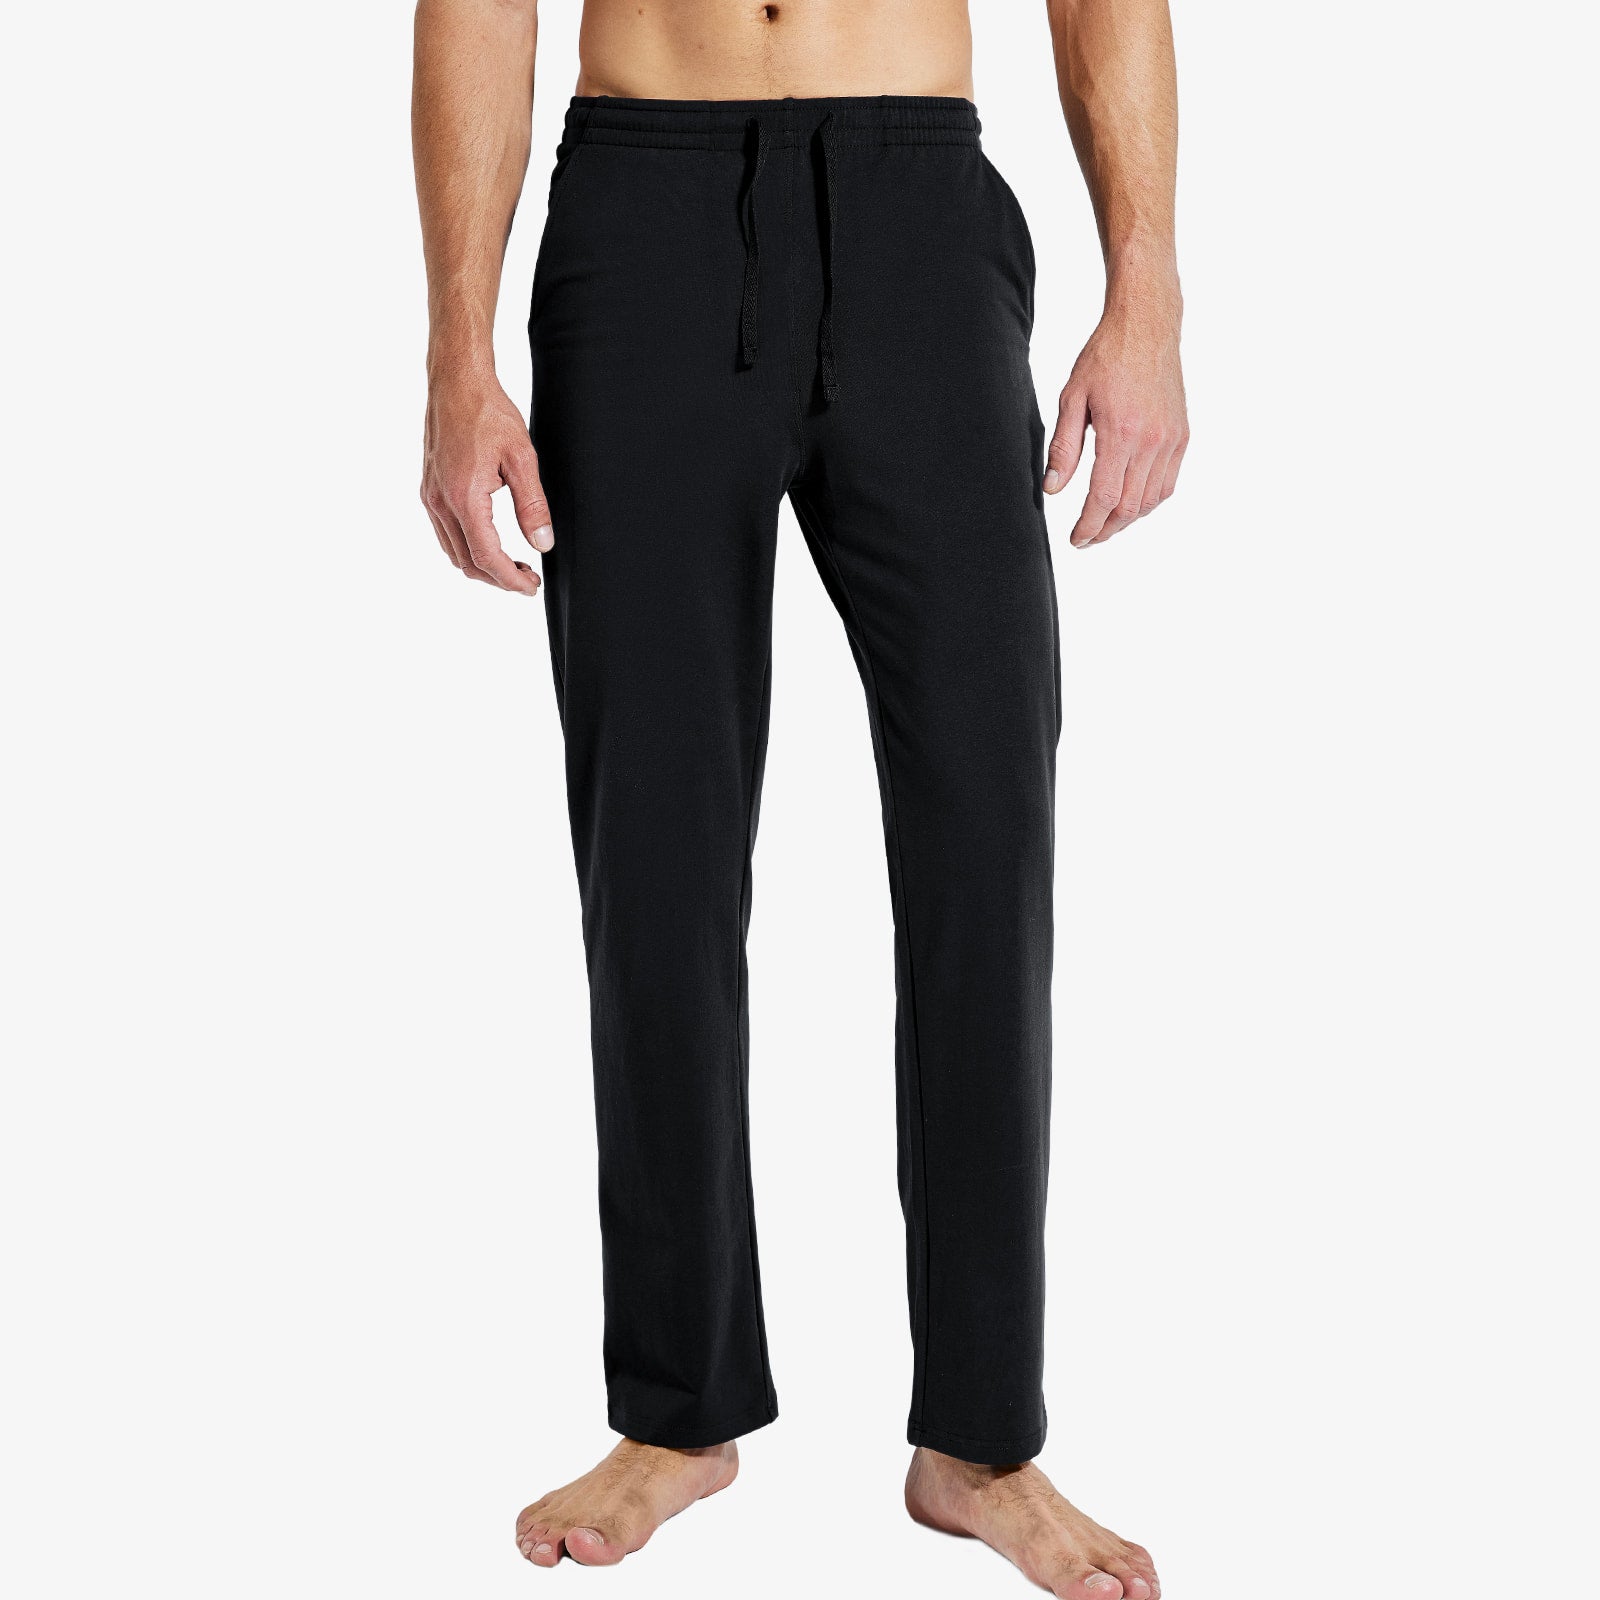 Men's Cotton Sweatpants with Pockets Lightweight Sports Knit Pants Men Train Pants Black / S MIER